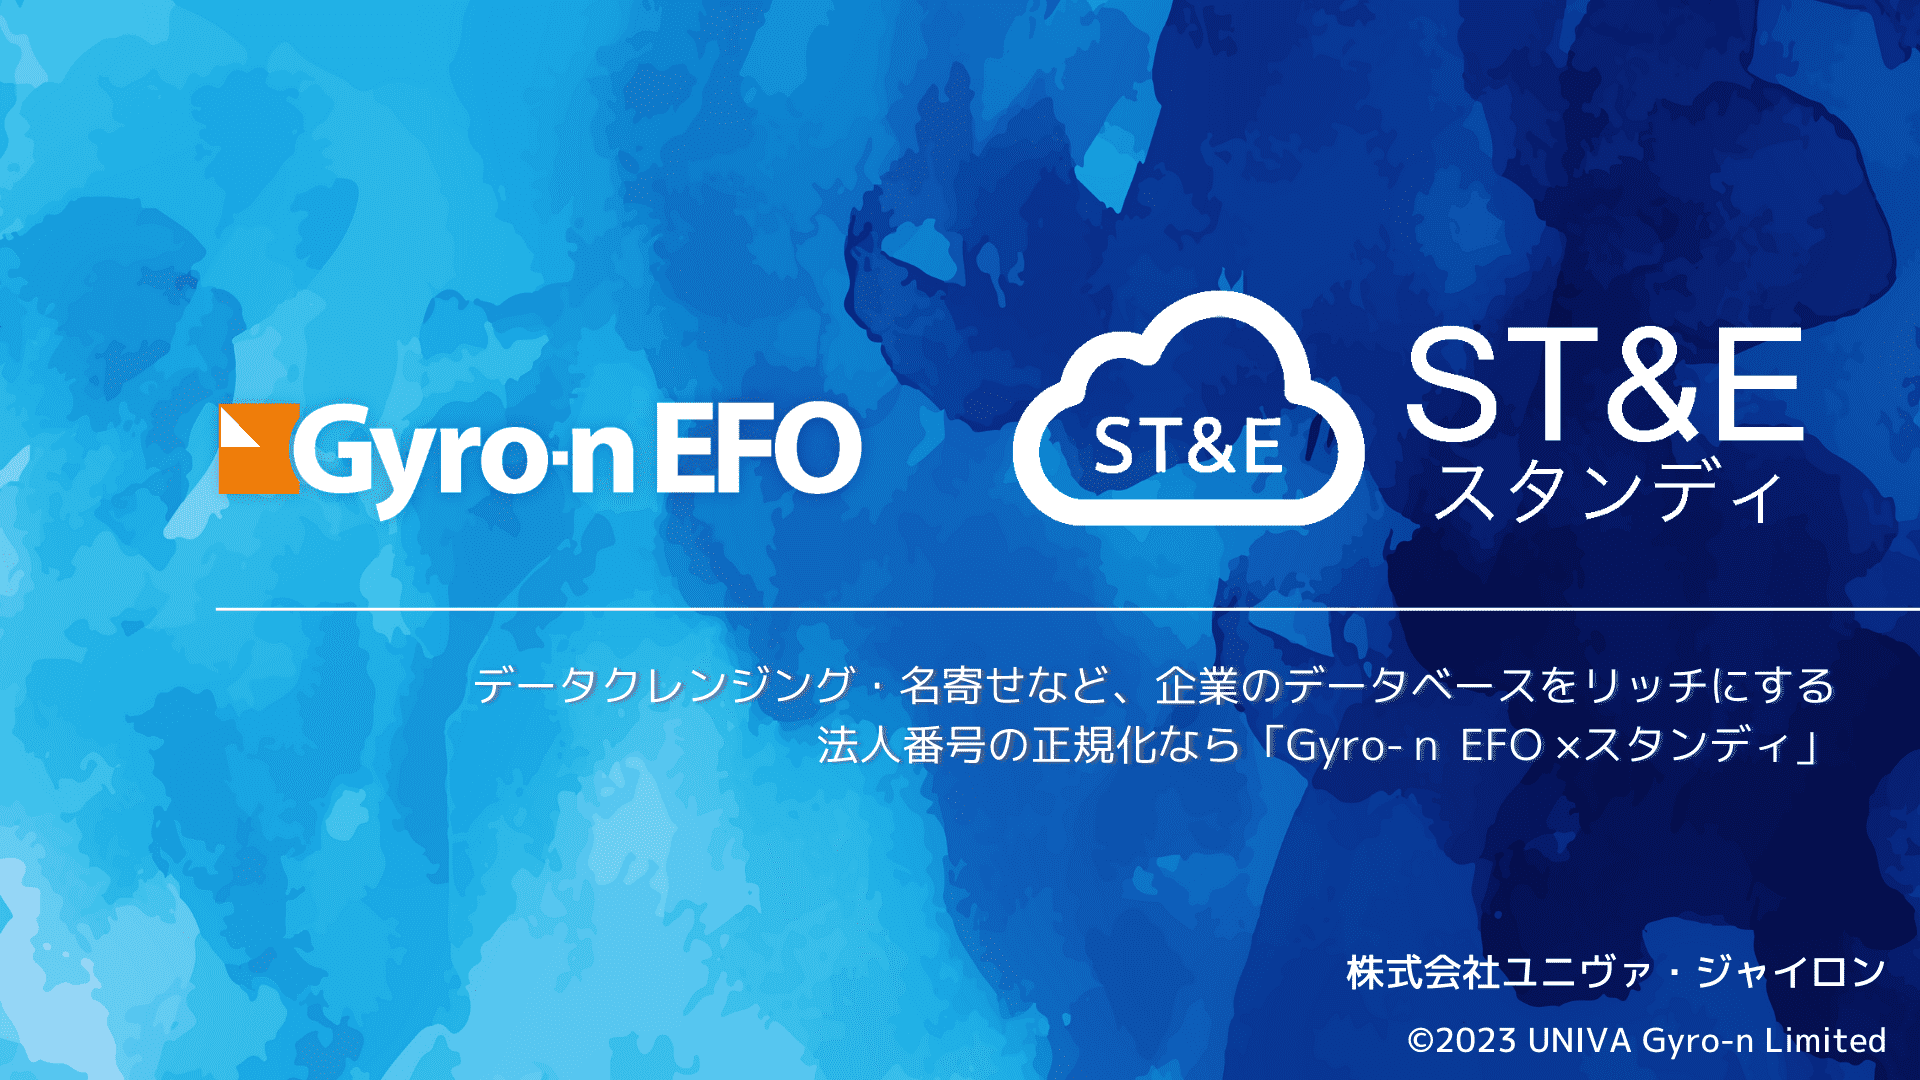 Gyro-n EFO × ST&E(スタンディ)資料